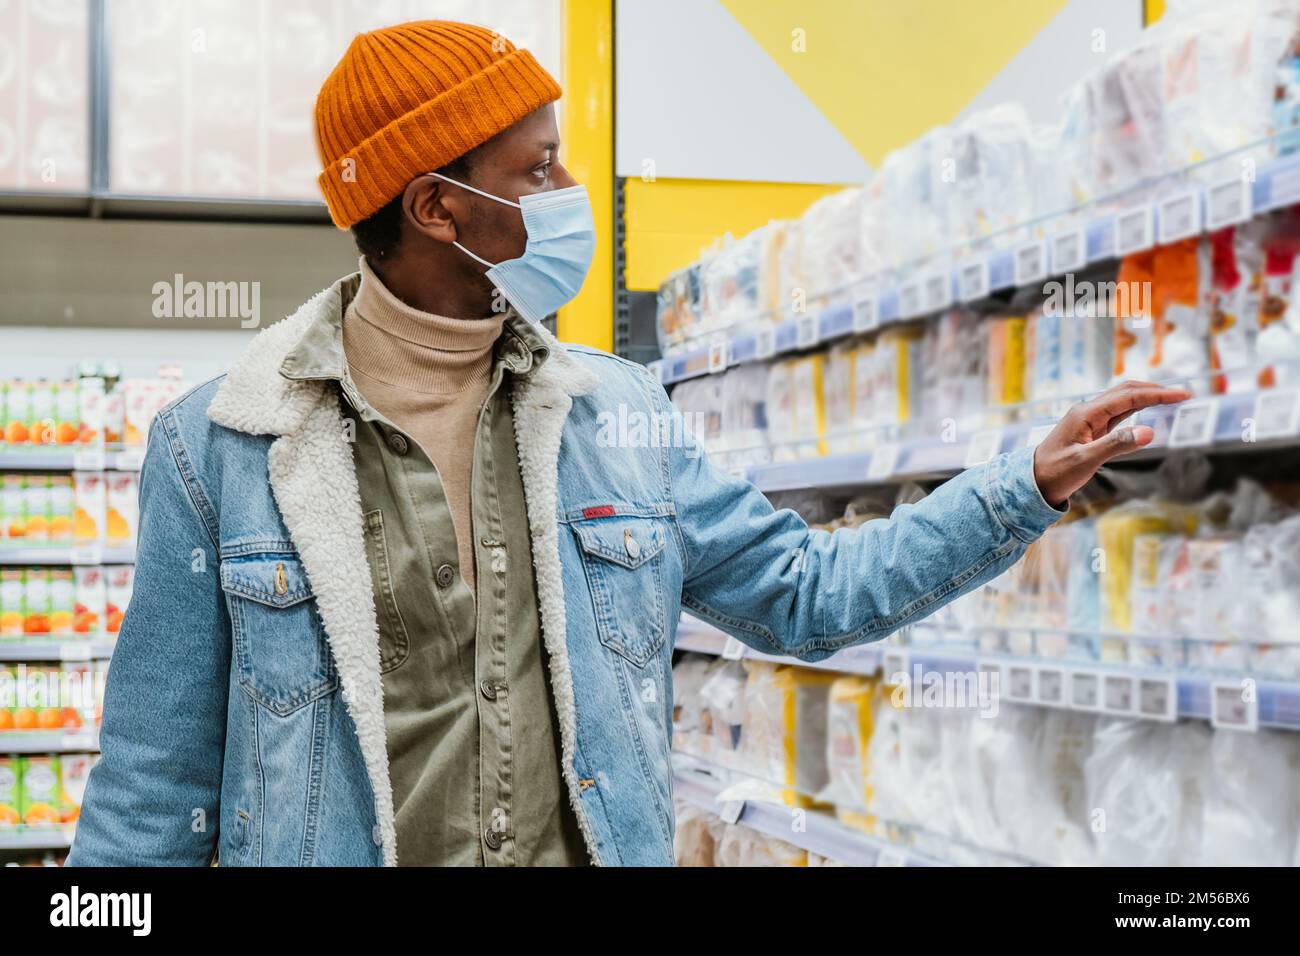 El hombre afroamericano joven en chaqueta de mezclilla con máscara protectora elige mercancías en el estante en el primer plano del departamento moderno del supermercado Foto de stock